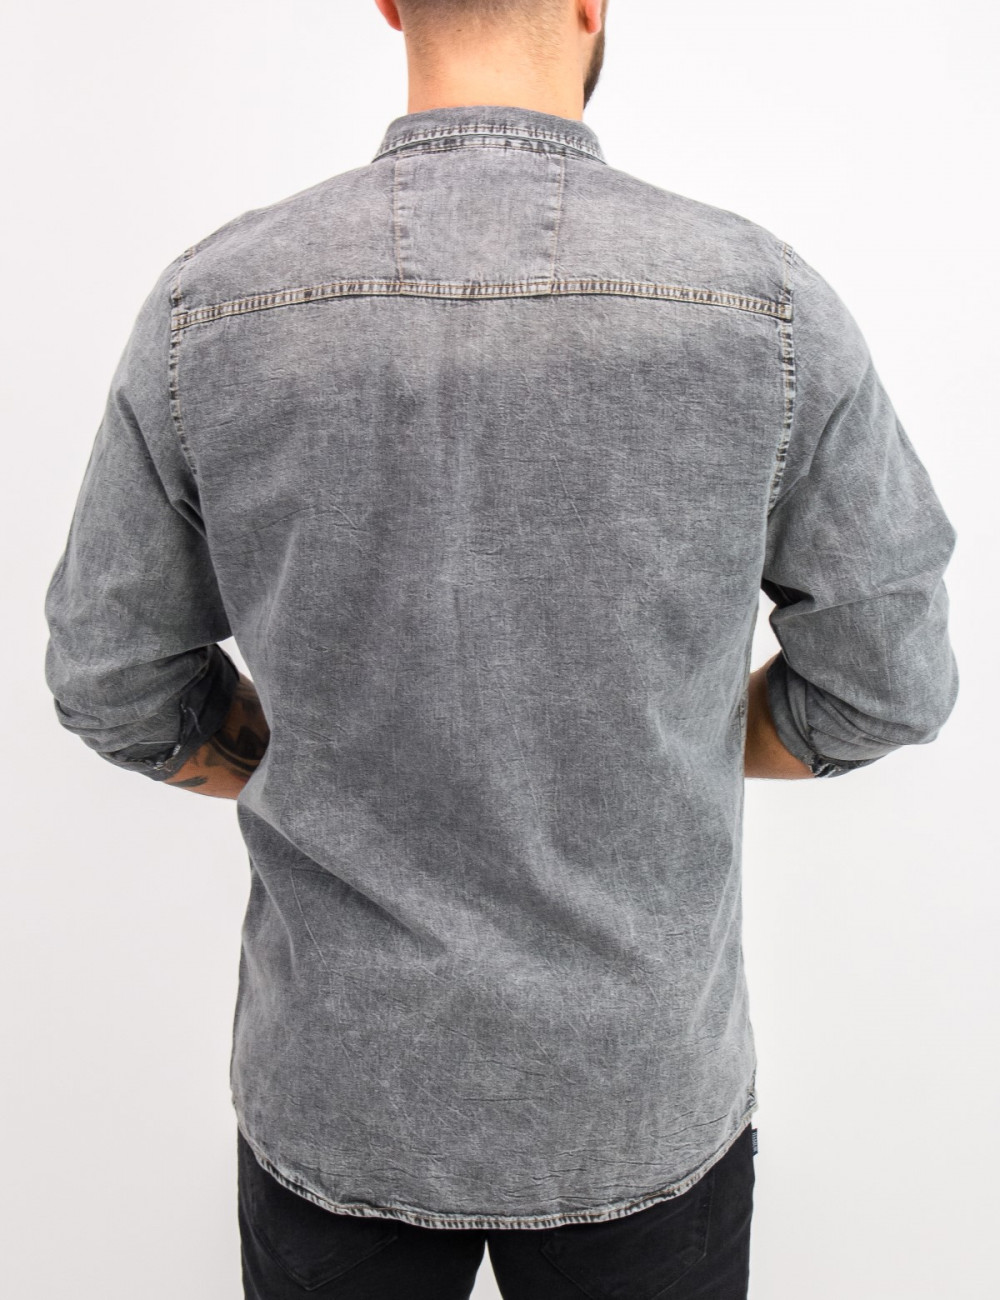 Ανδρικό γκρι τζιν πουκάμισο με κουμπιά 18276G